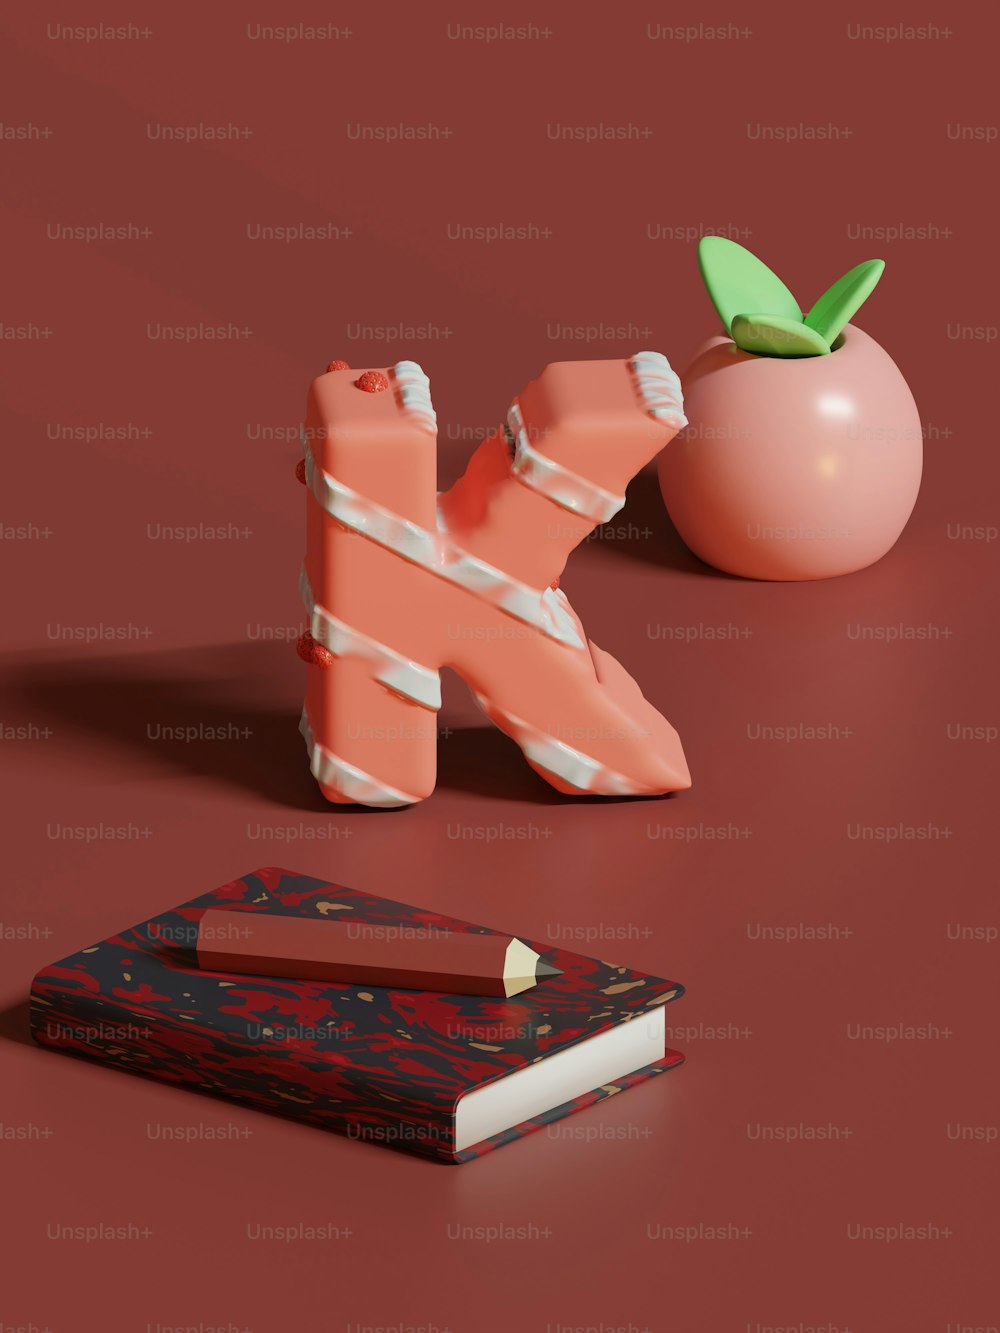 Ein Buch, ein Bleistifthalter und ein Apfel sitzen auf einer roten Fläche